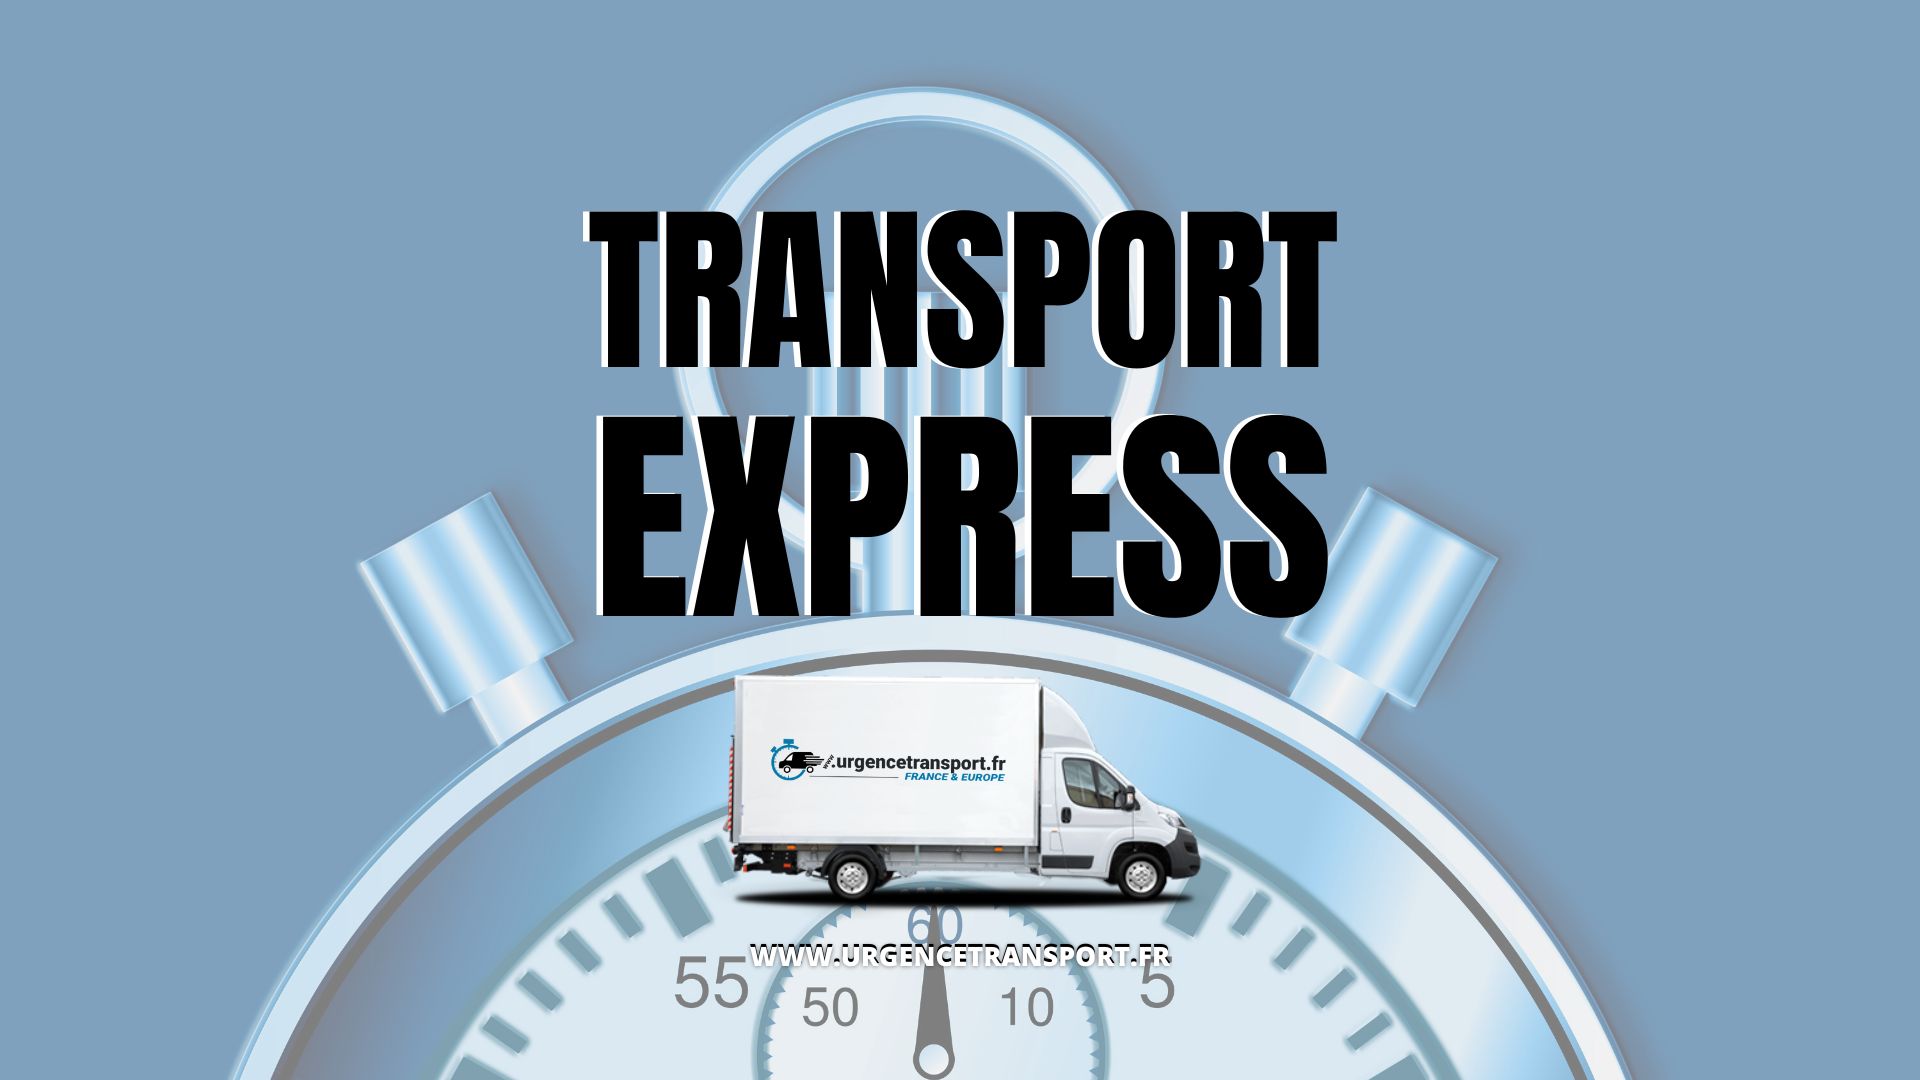 transport expresse -urgencetransport.fr